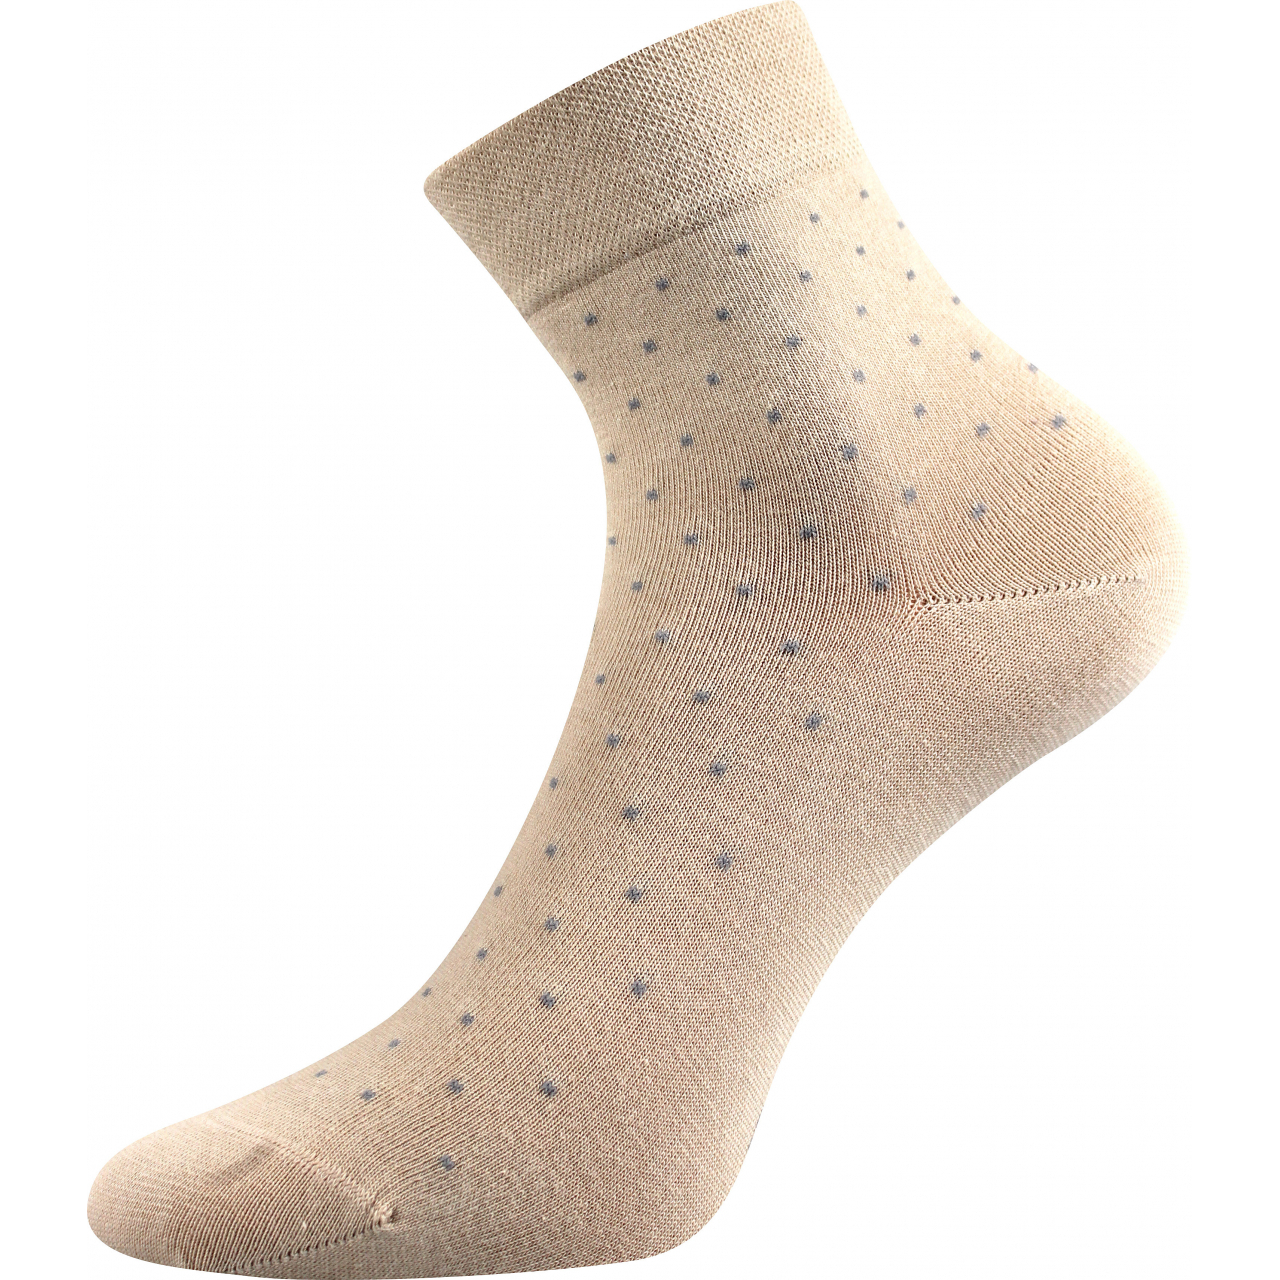 Ponožky dámské elegantní Lonka Fiona - béžové, 39-42